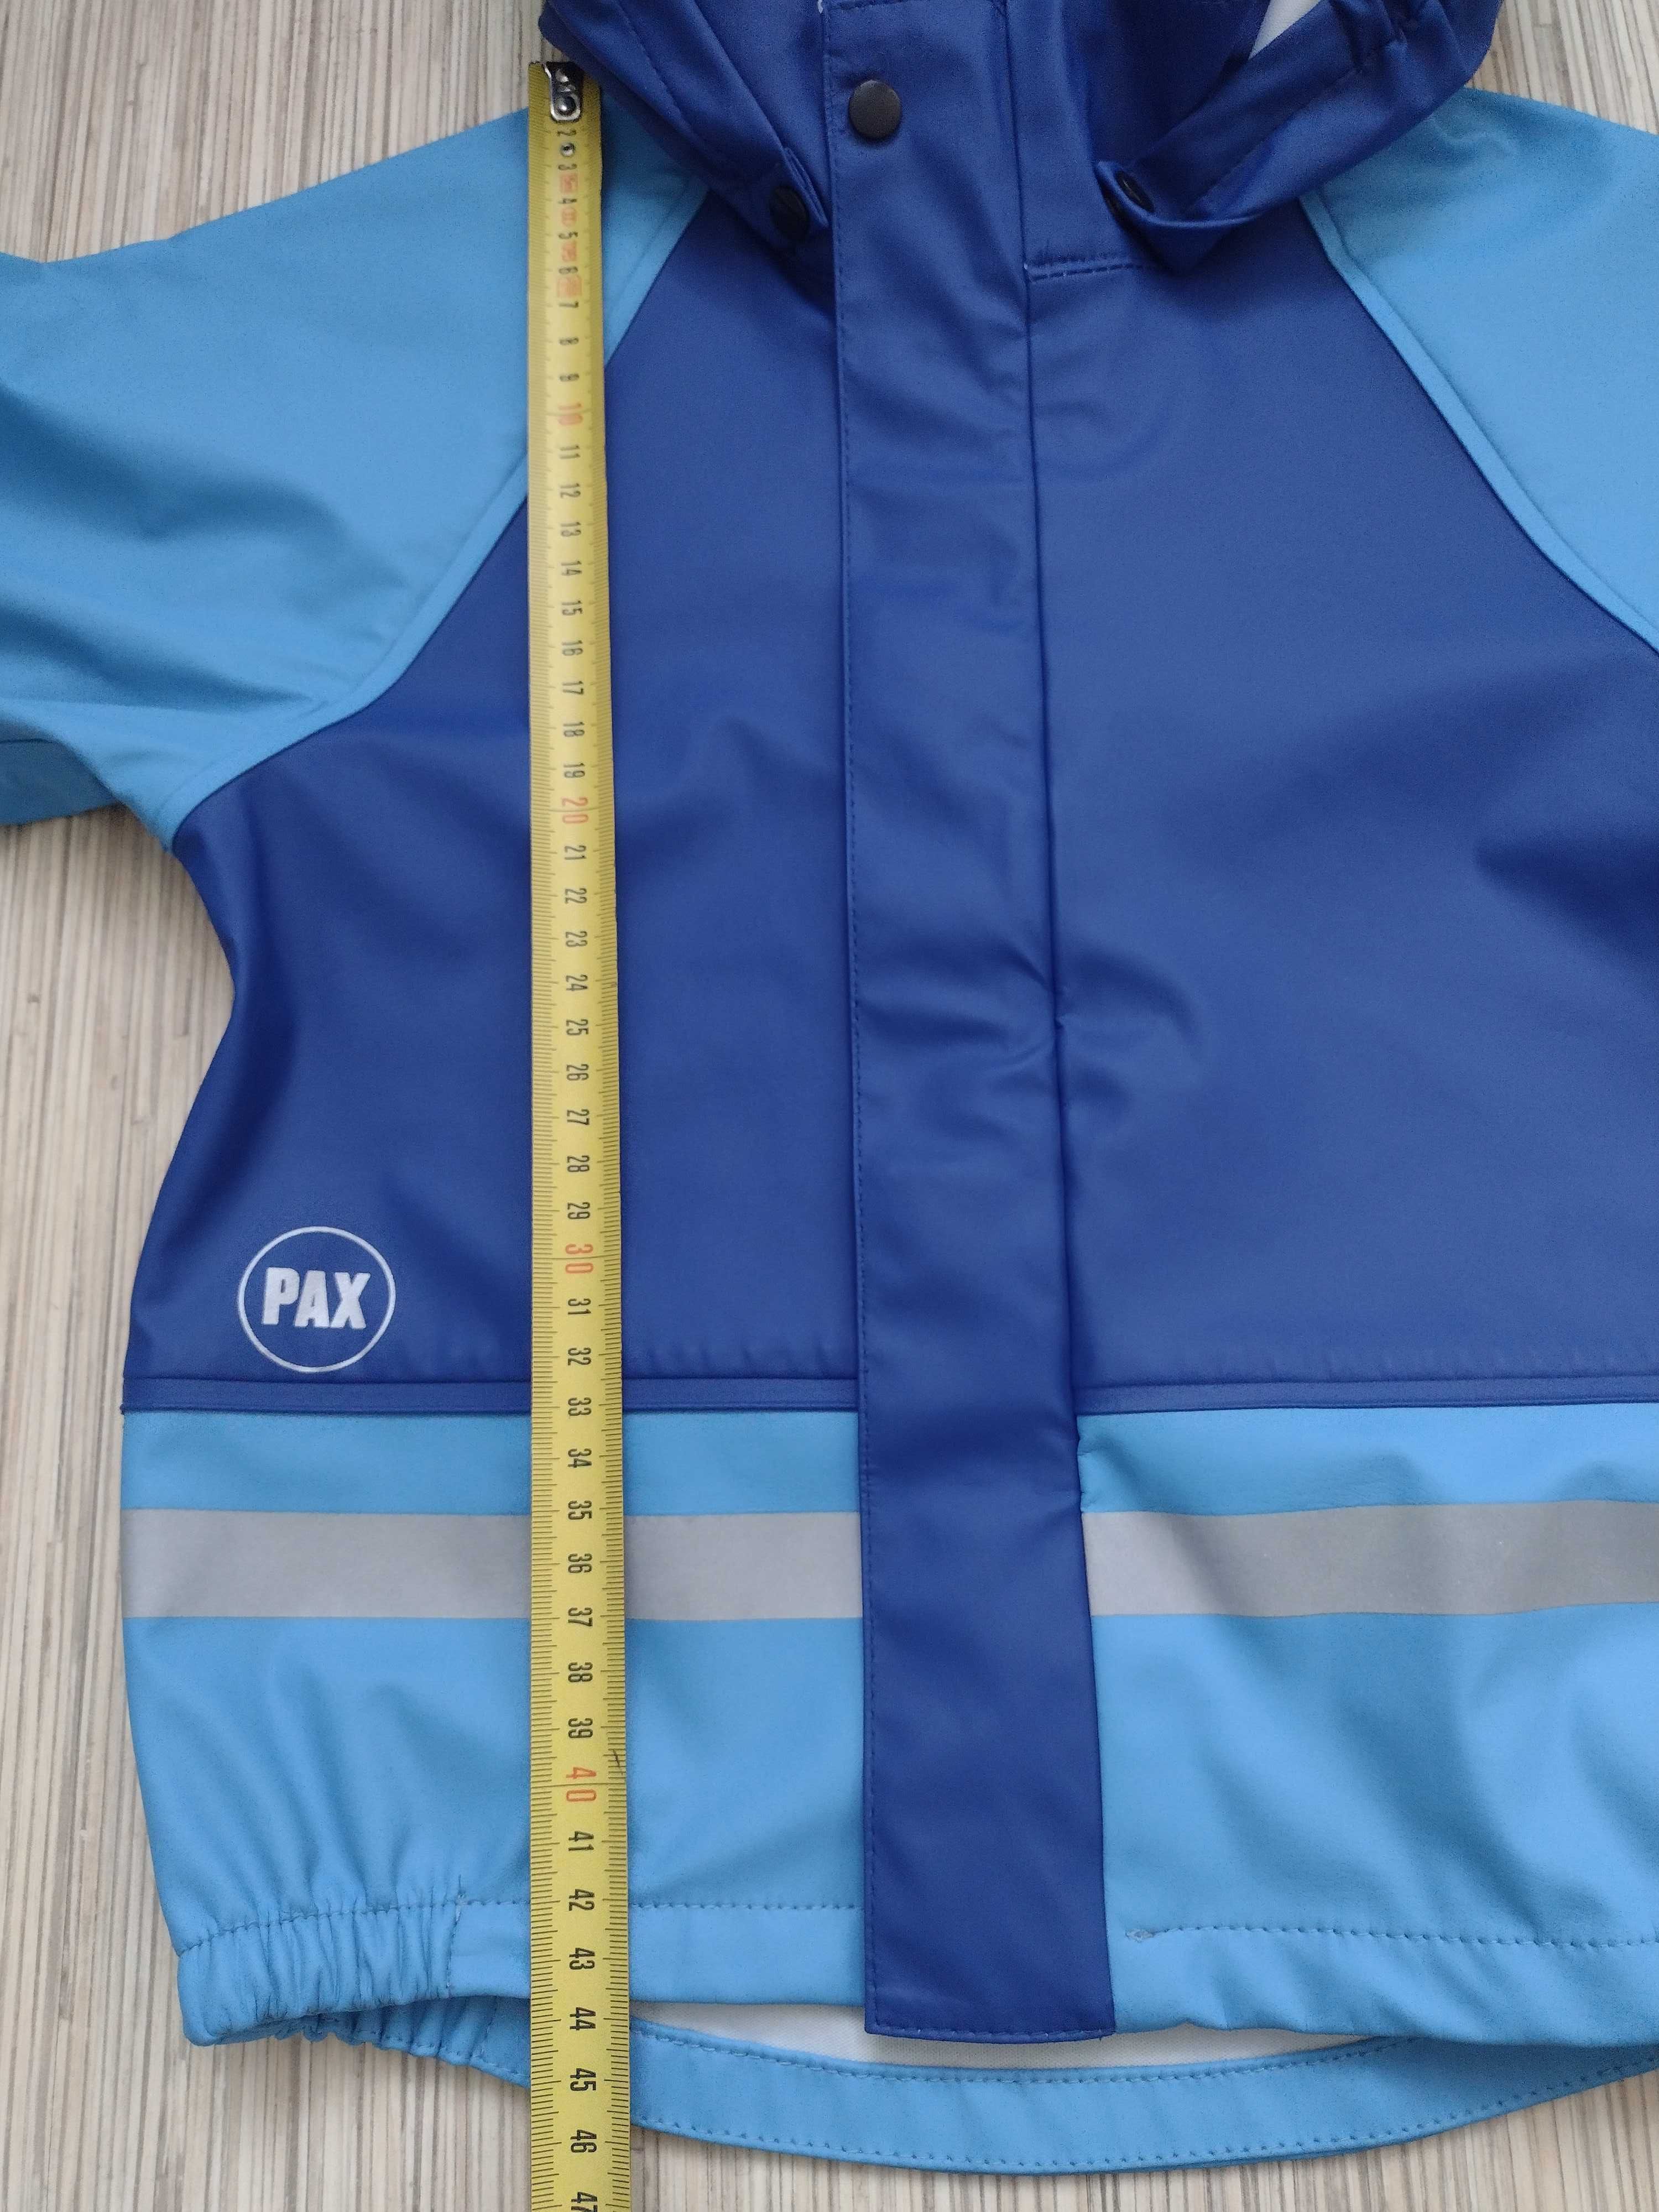 PAX, rozmiar 100, kurtka przeciwdeszczowa gumowa dla chłopca